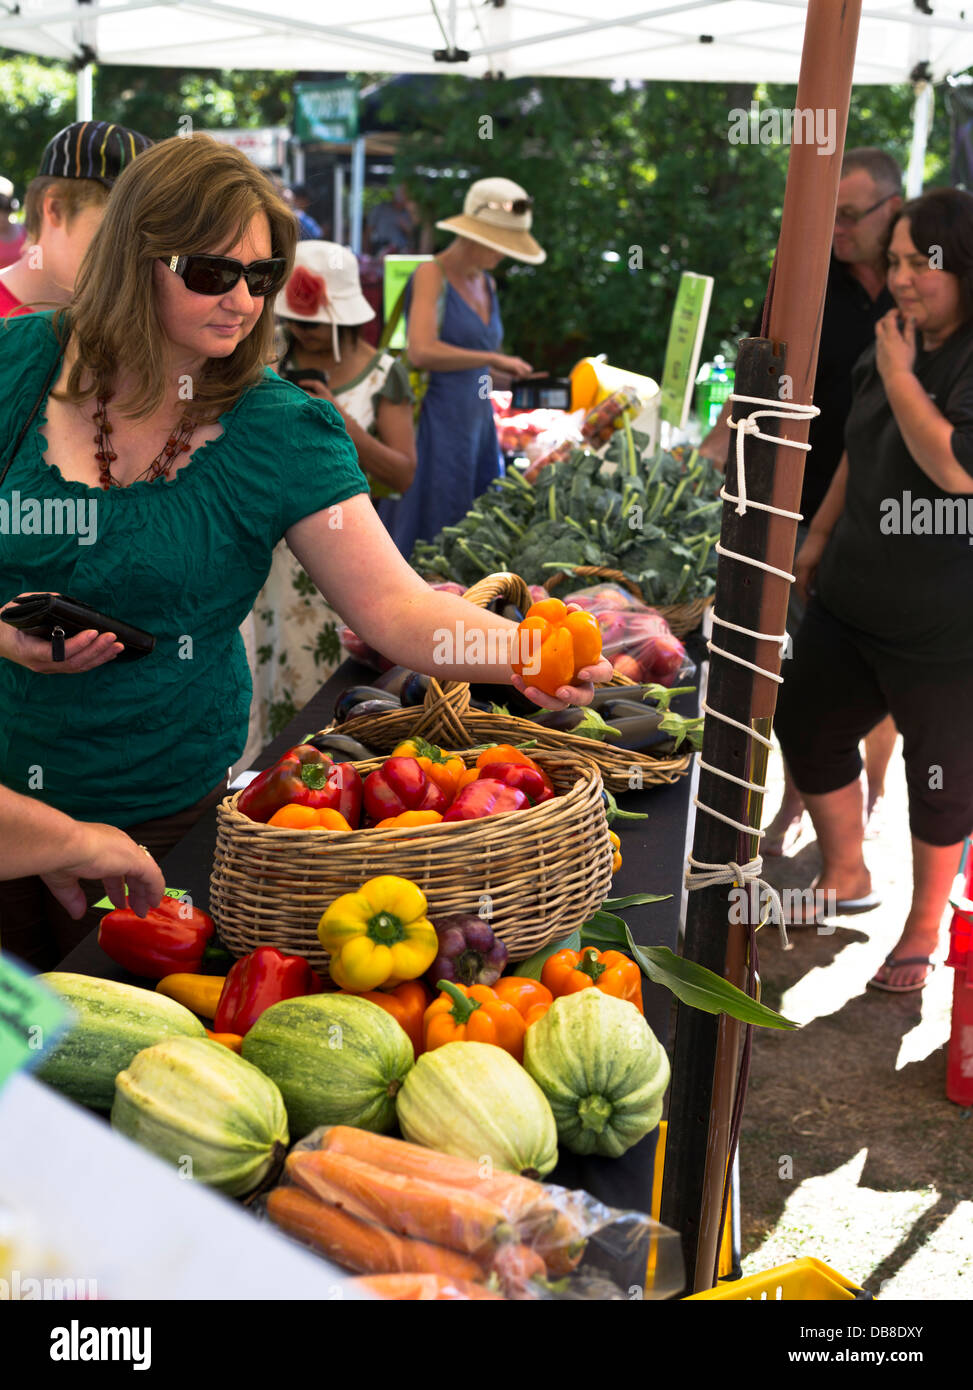 dh marché du dimanche hawkes Bay HASTINGS NOUVELLE-ZÉLANDE Lady cueillir des légumes les épiciers verts stallent des fruits de la nourriture Banque D'Images